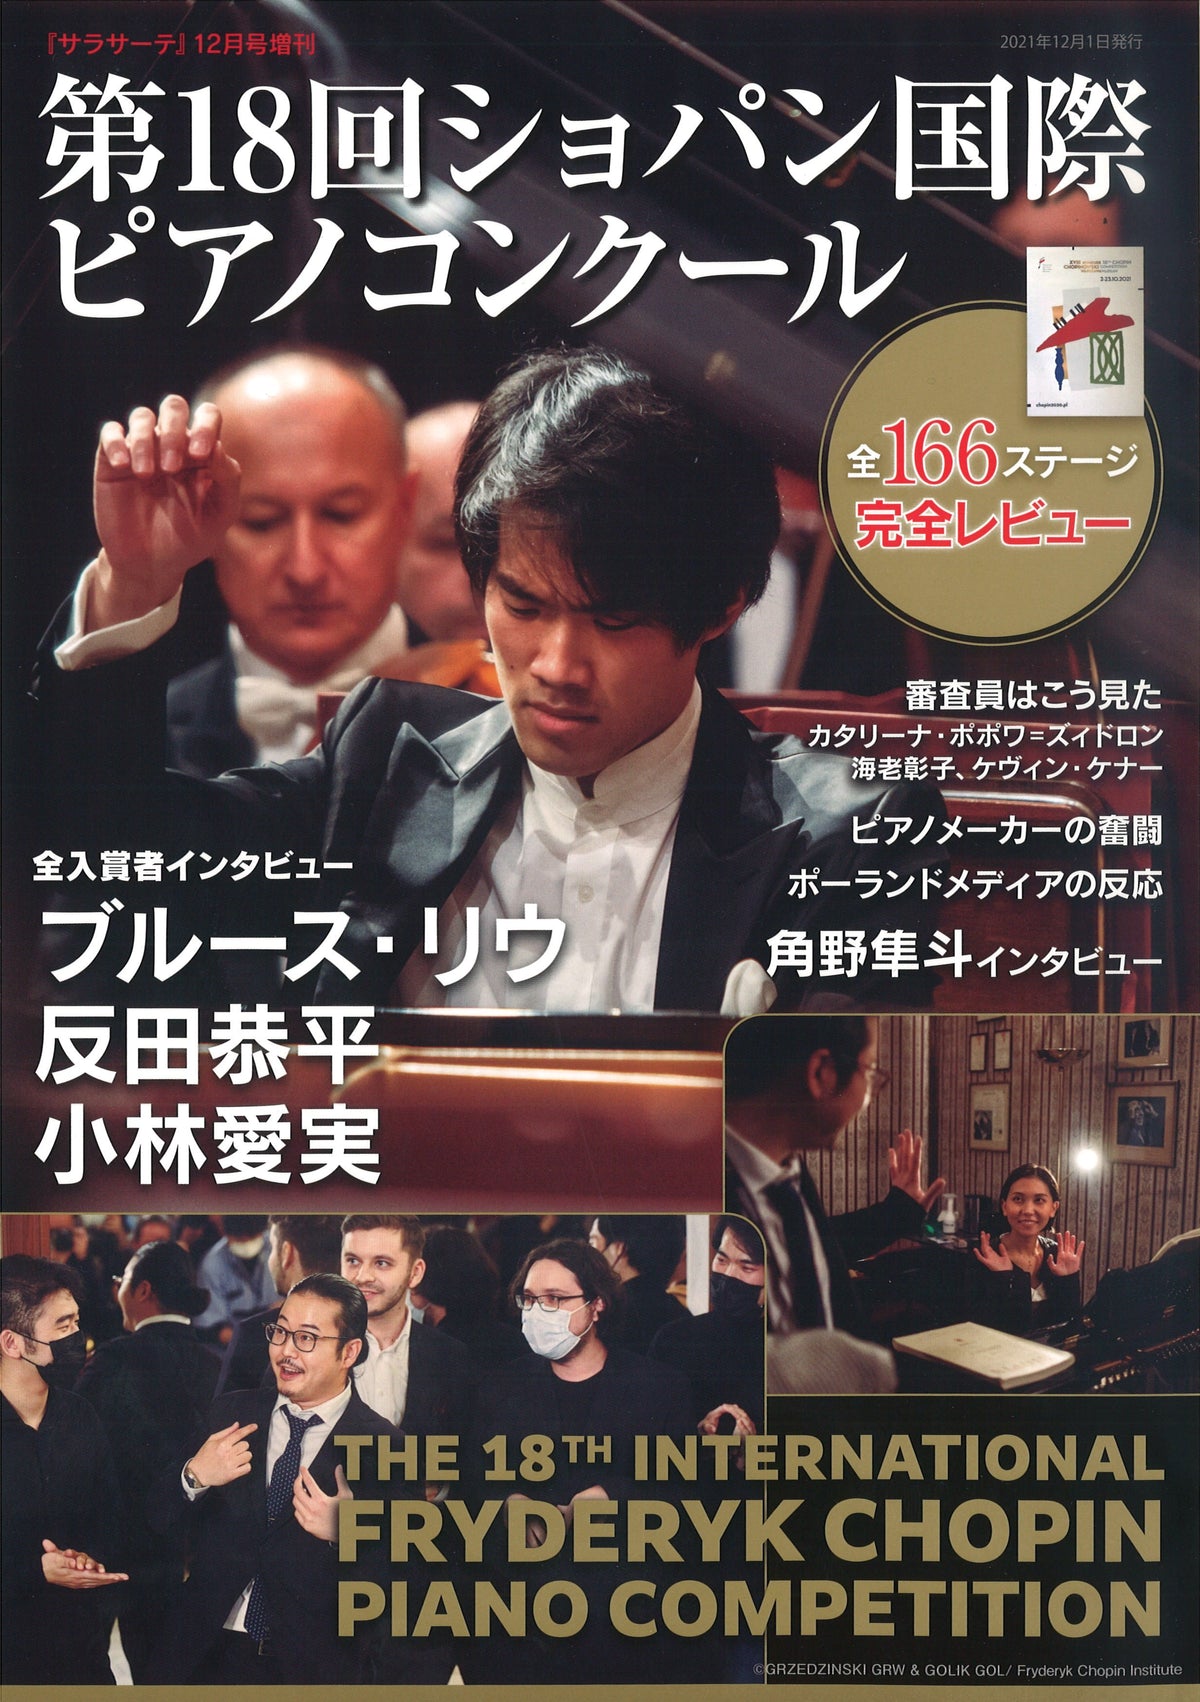 弦楽器専門誌 サラサーテ12月増刊「第18回ショパン国際ピアノ 